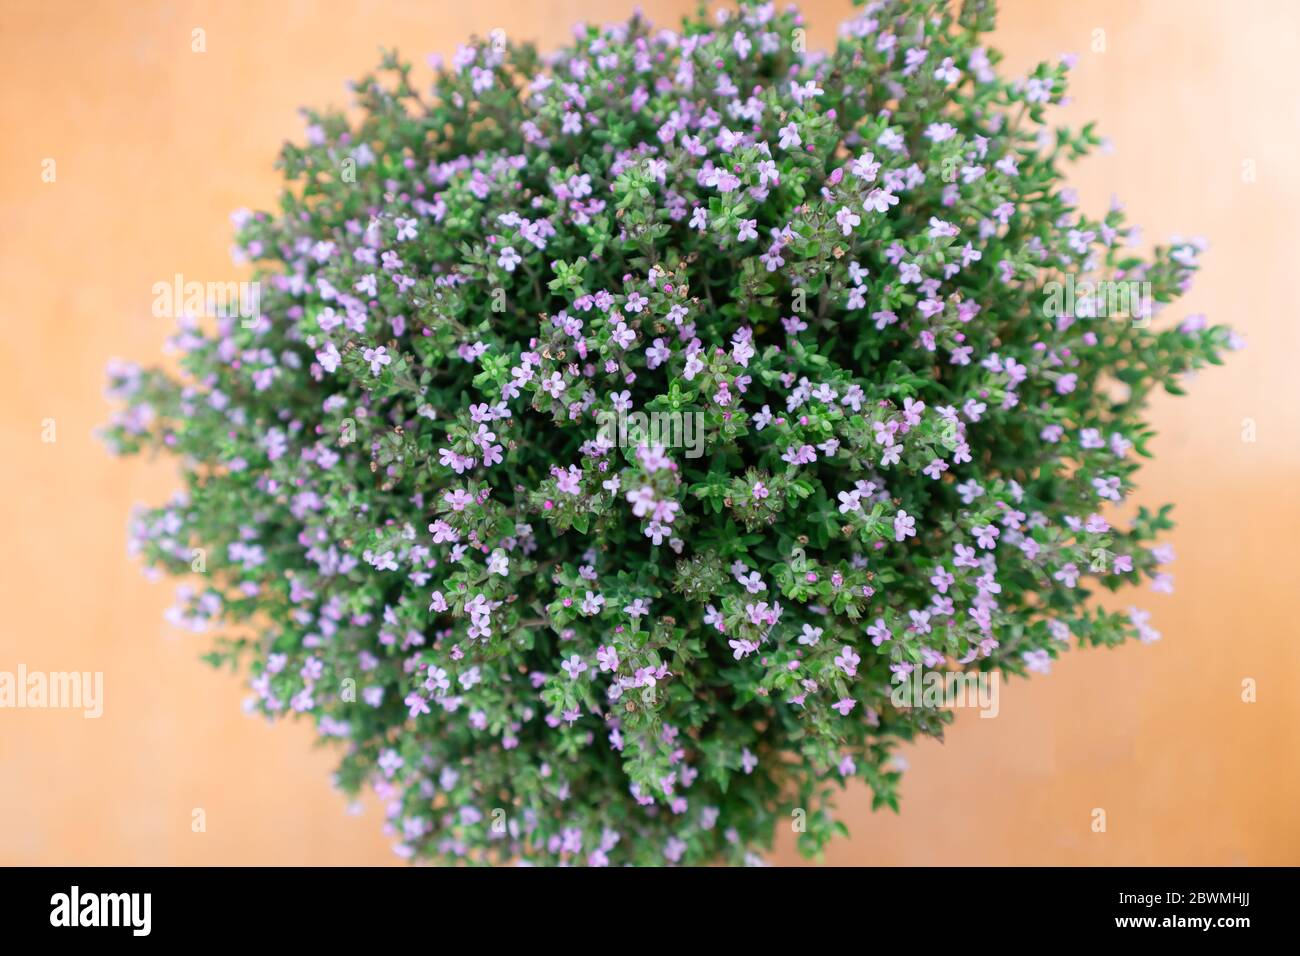 Primo piano, macro di piante di timo fiorite, piccoli fiori viola, piante aromatiche per uso culinario e aromaterapico, sfondo arancione luminoso. Opzioni Foto Stock